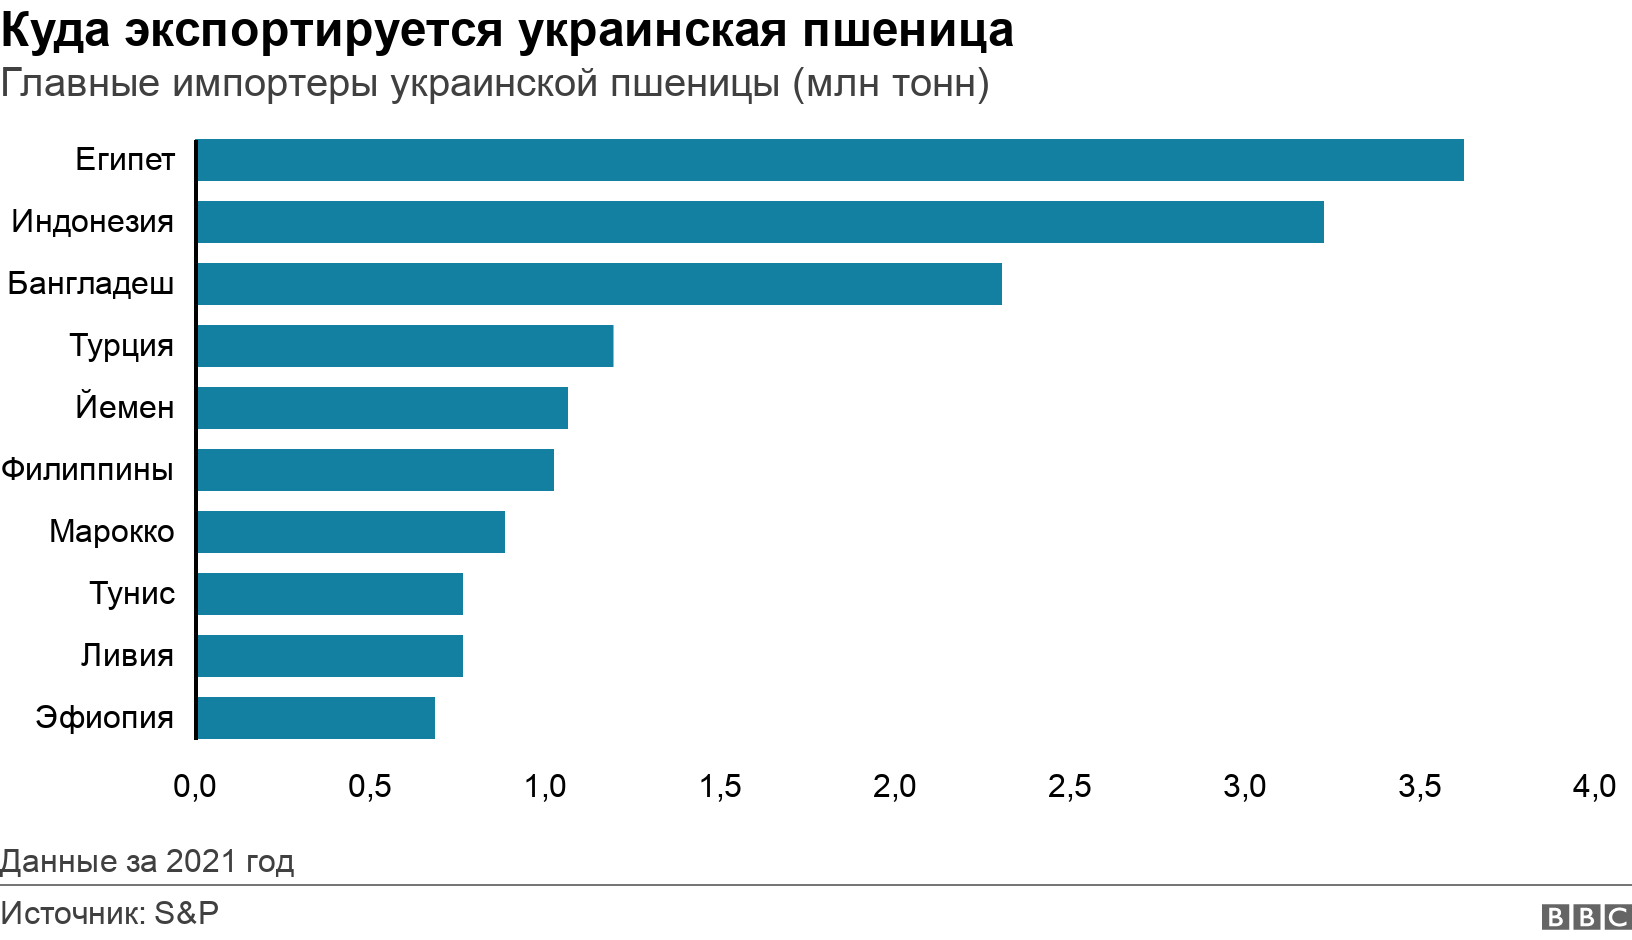 Куда экспортируется украинская пшеница. Главные импортеры украинской пшеницы (млн тонн). График, показывающий 10 крупнейших стран, импортировавших украинскую пшеницу (в миллионах метрических тонн) в 2021 году. Данные за 2021 год.